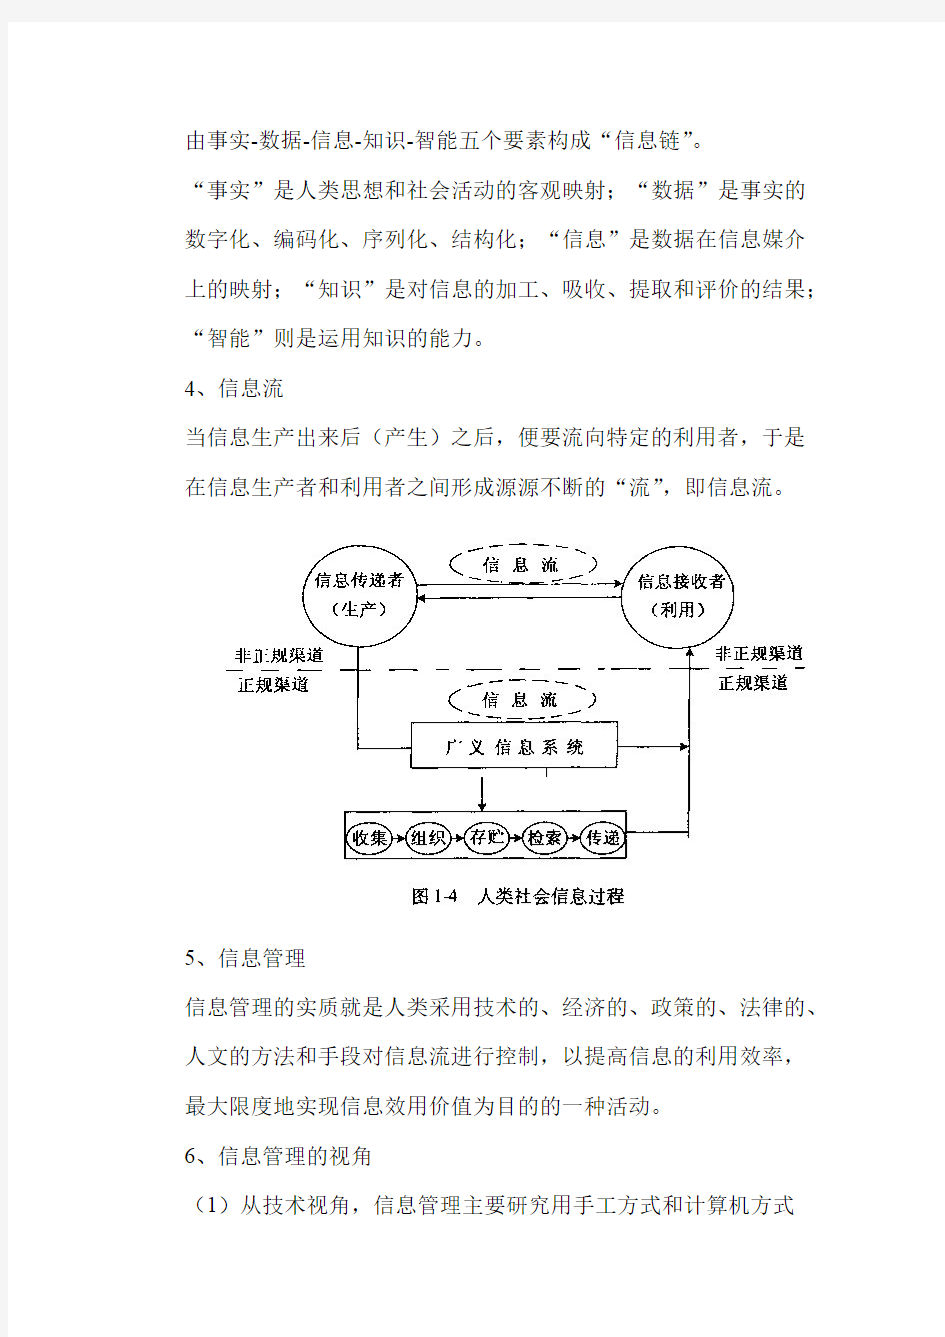 (完整版)信息管理学基础知识点(马费成、宋恩梅),推荐文档